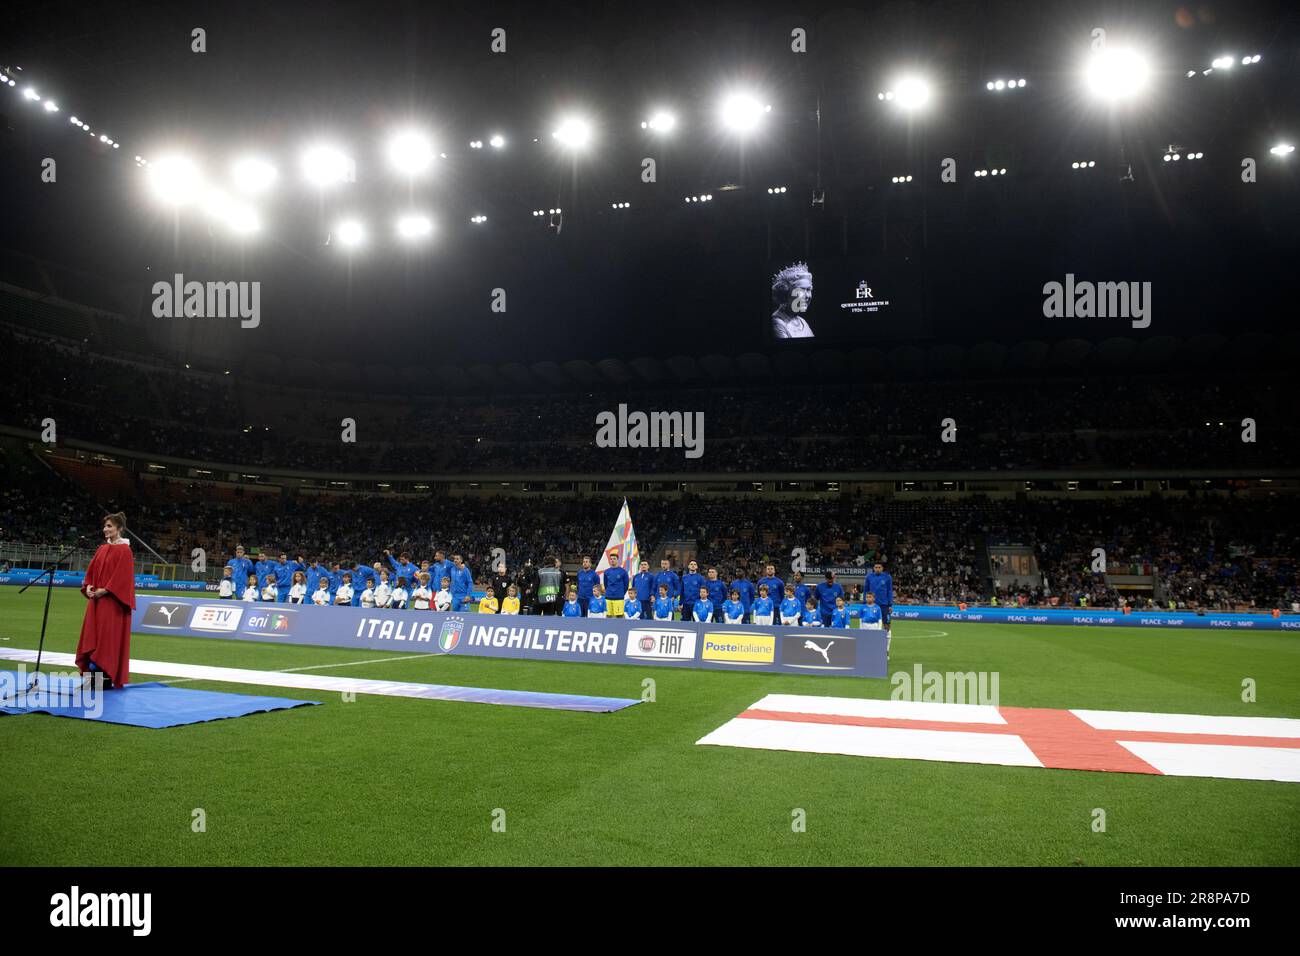 Der Tod von Königin Elisabeth II. Wird im San Siro Stadion geehrt, bevor am 23. september 2022 das UEFA Nations League Match Italy vs England in Mailand ausgetragen wird Stockfoto